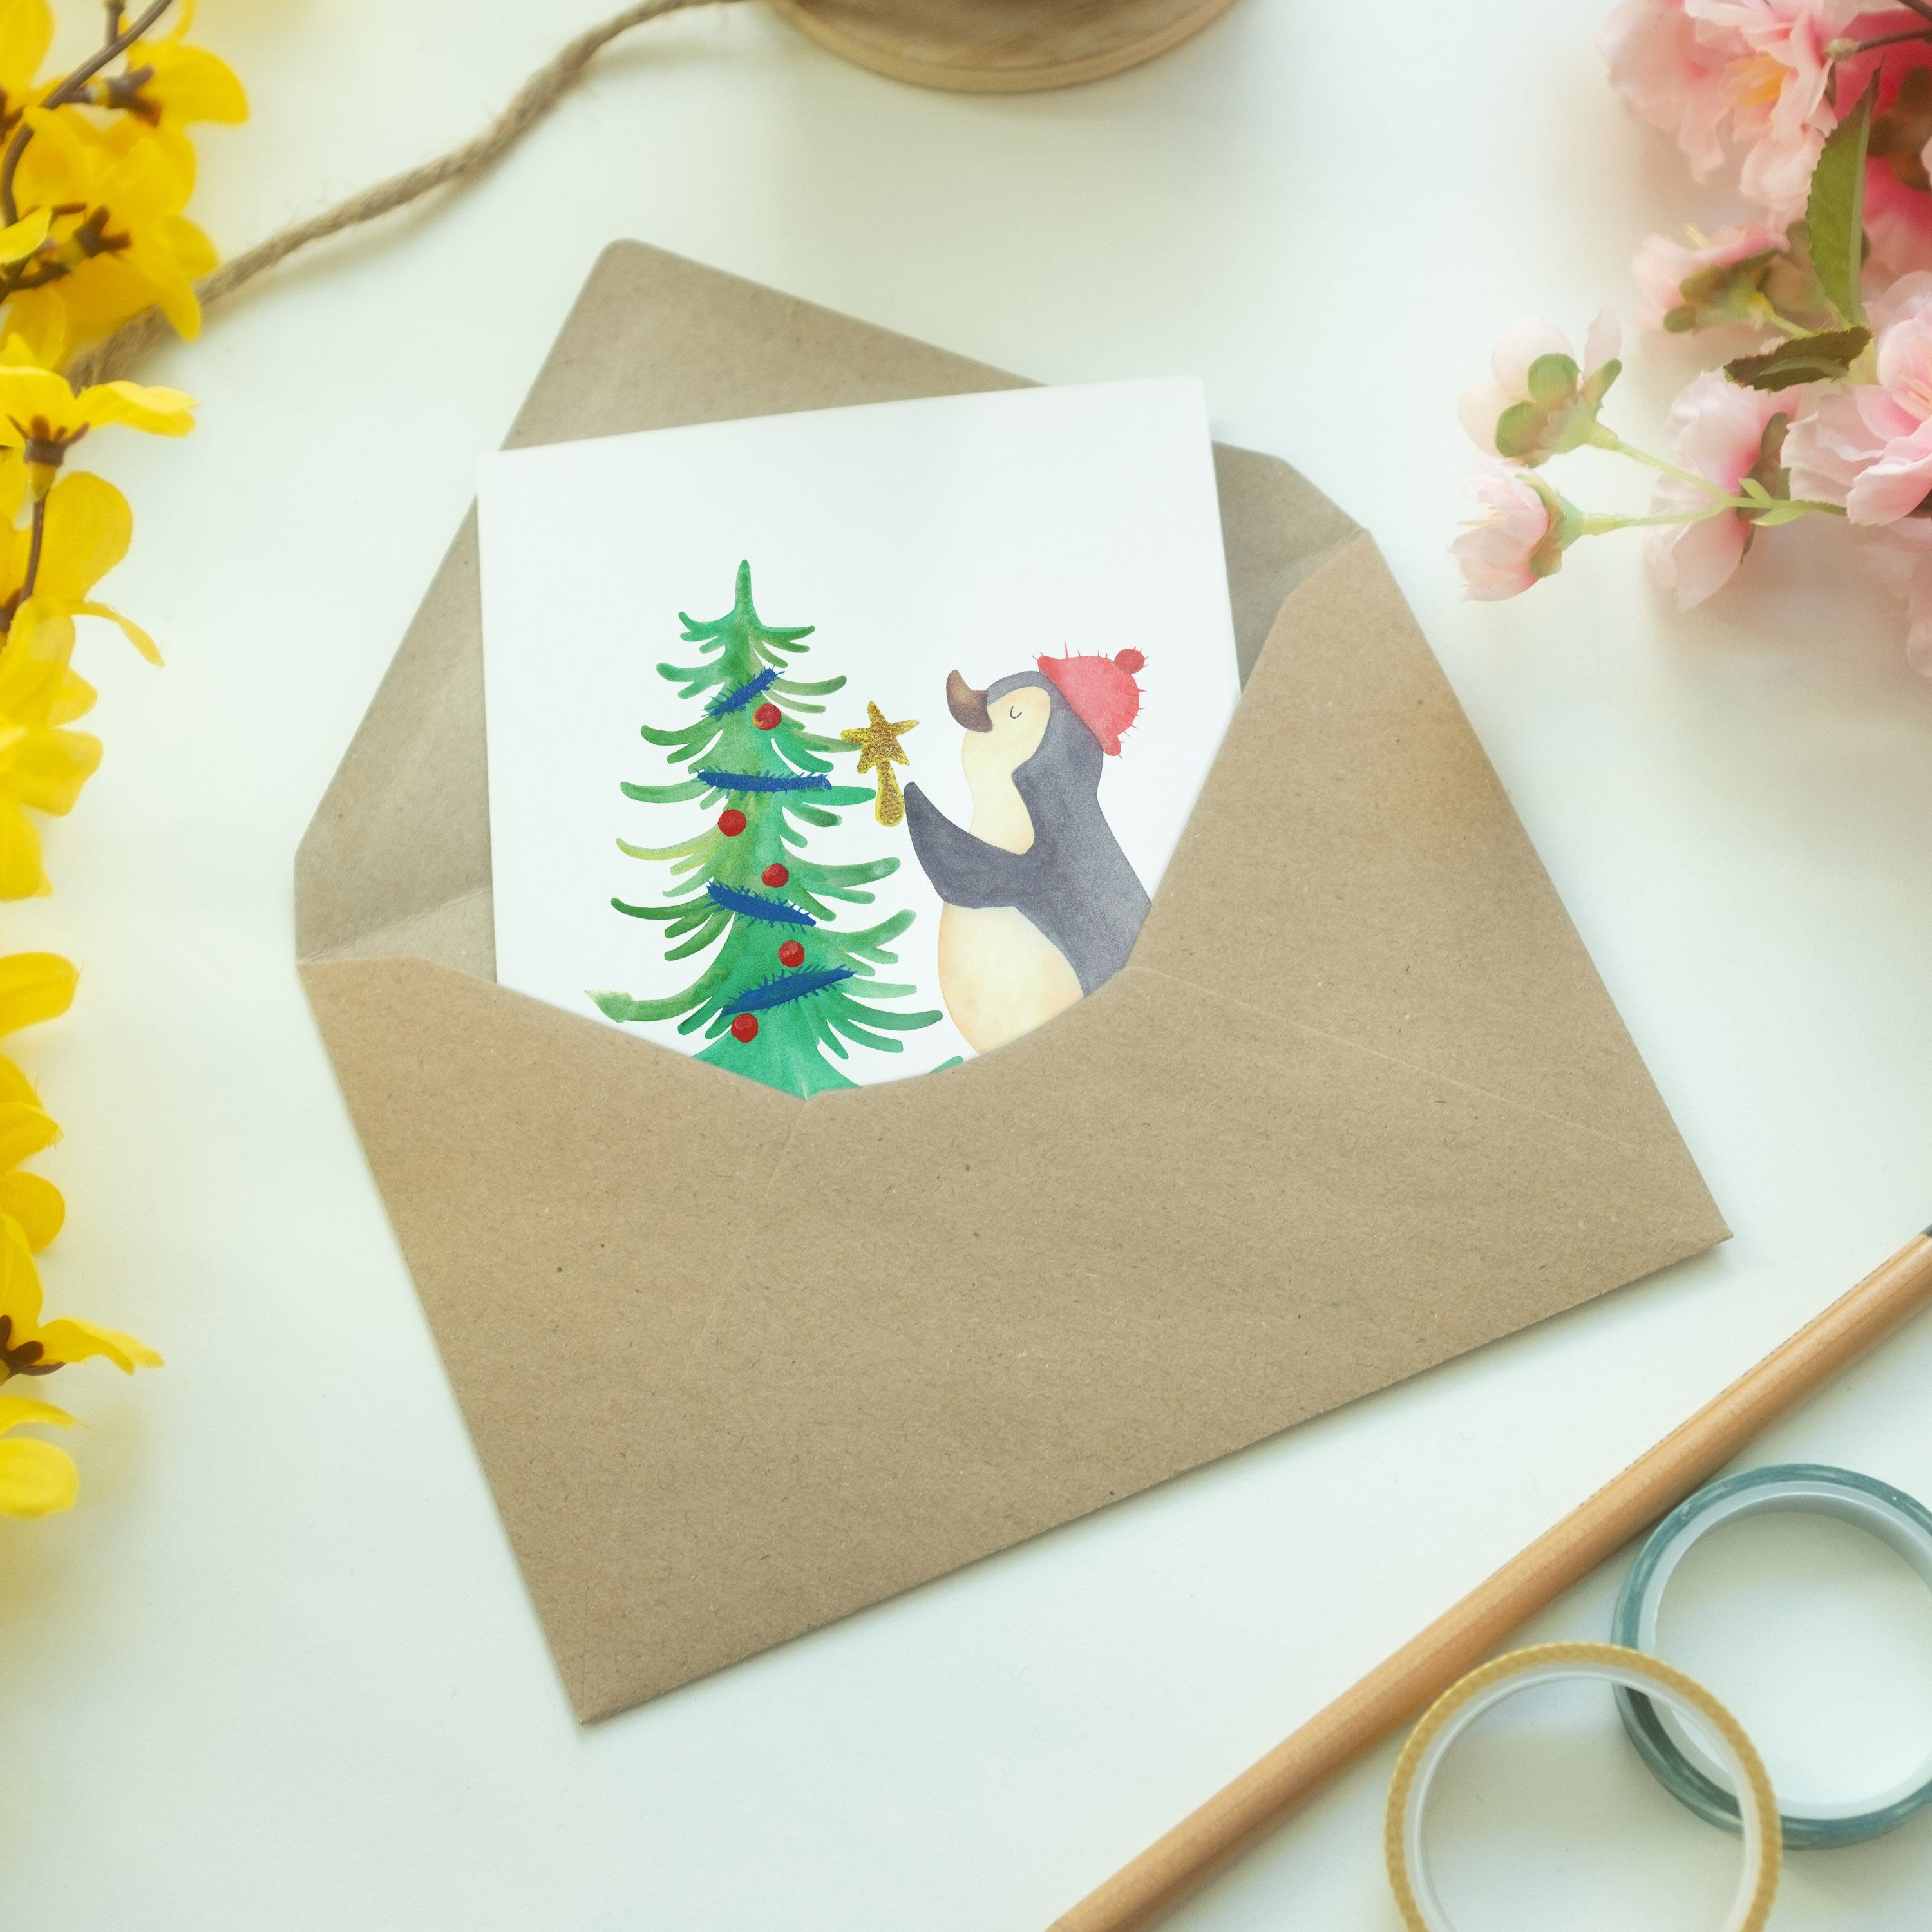 Mr. & Mrs. Weiß Pinguin - Geschenk, Weihnachtsdeko, Grußkarte Panda Weihnachtsbaum - Glückwunsch